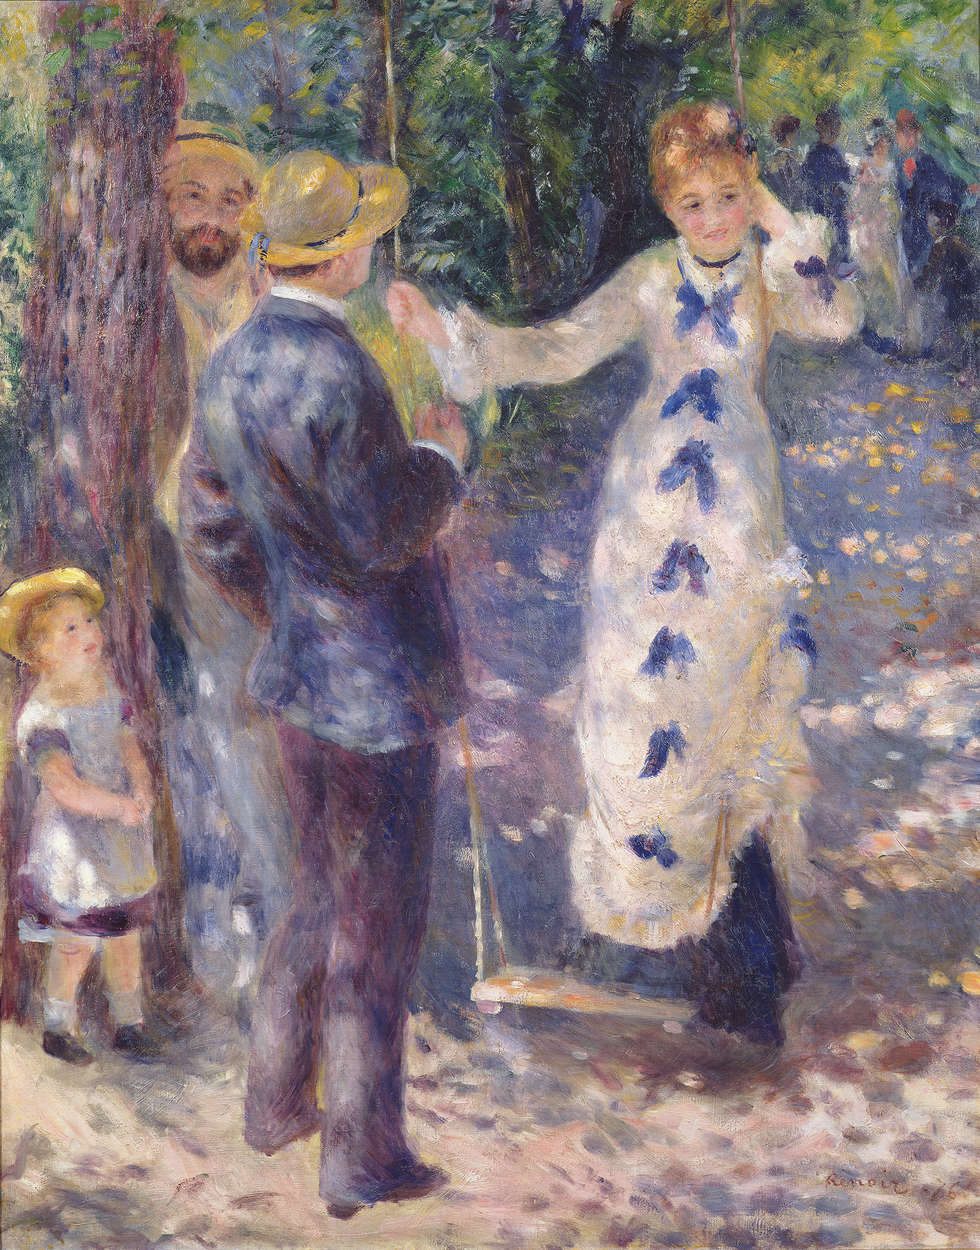             Muurschildering "Op de schommel" door Pierre Auguste Renoir
        